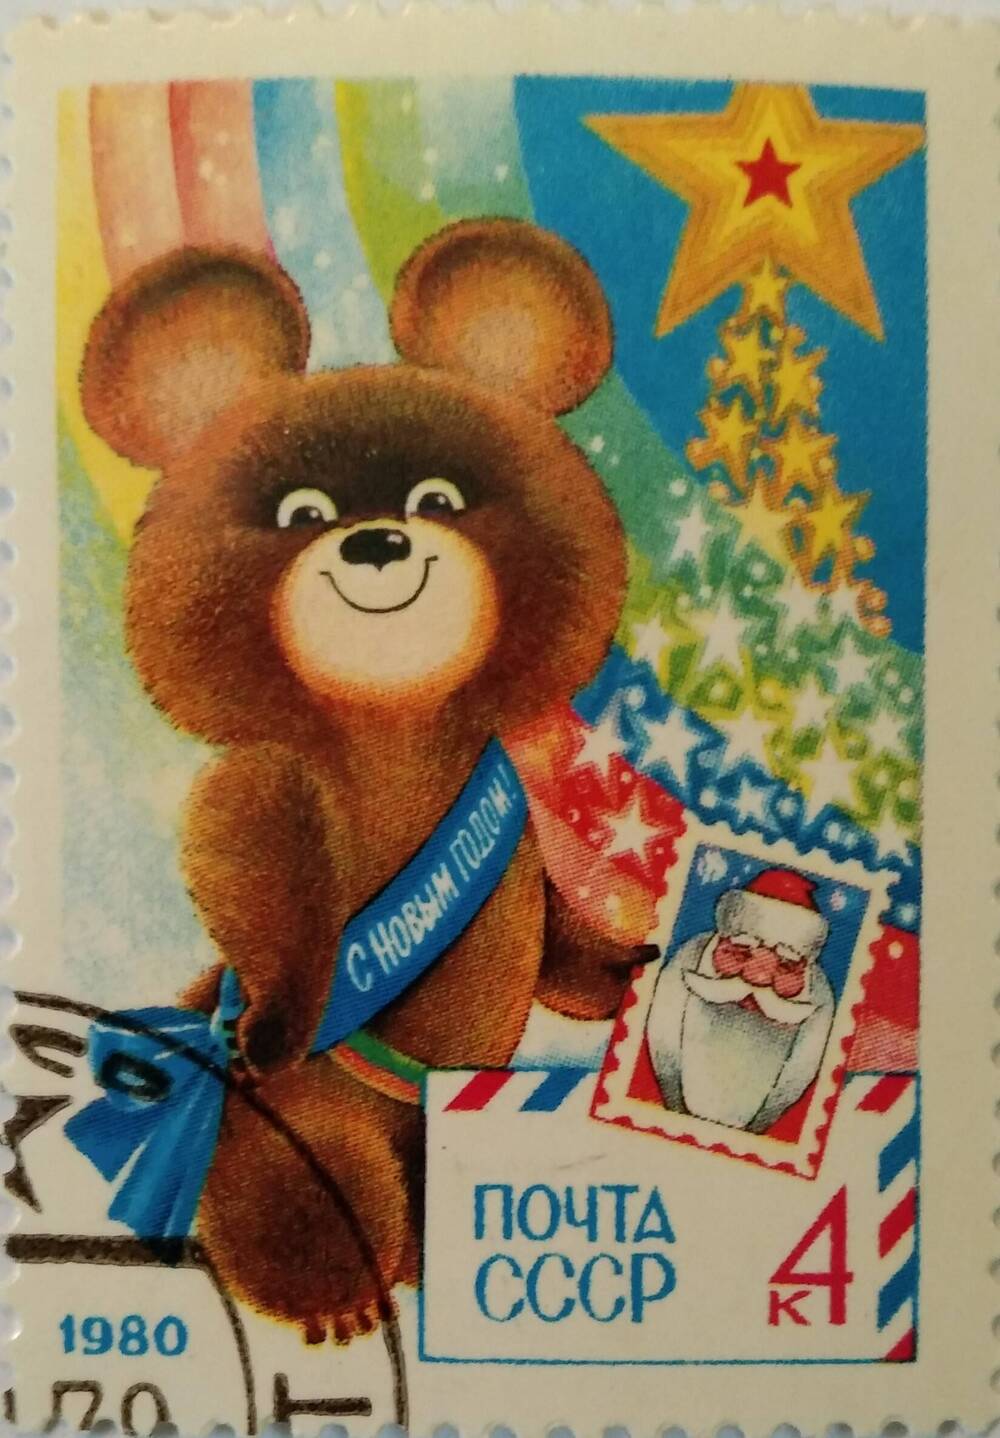 Марка почтовая с изображением Олимпийского бурого Мишки - символа летних игр 1980 года (г.Москва)